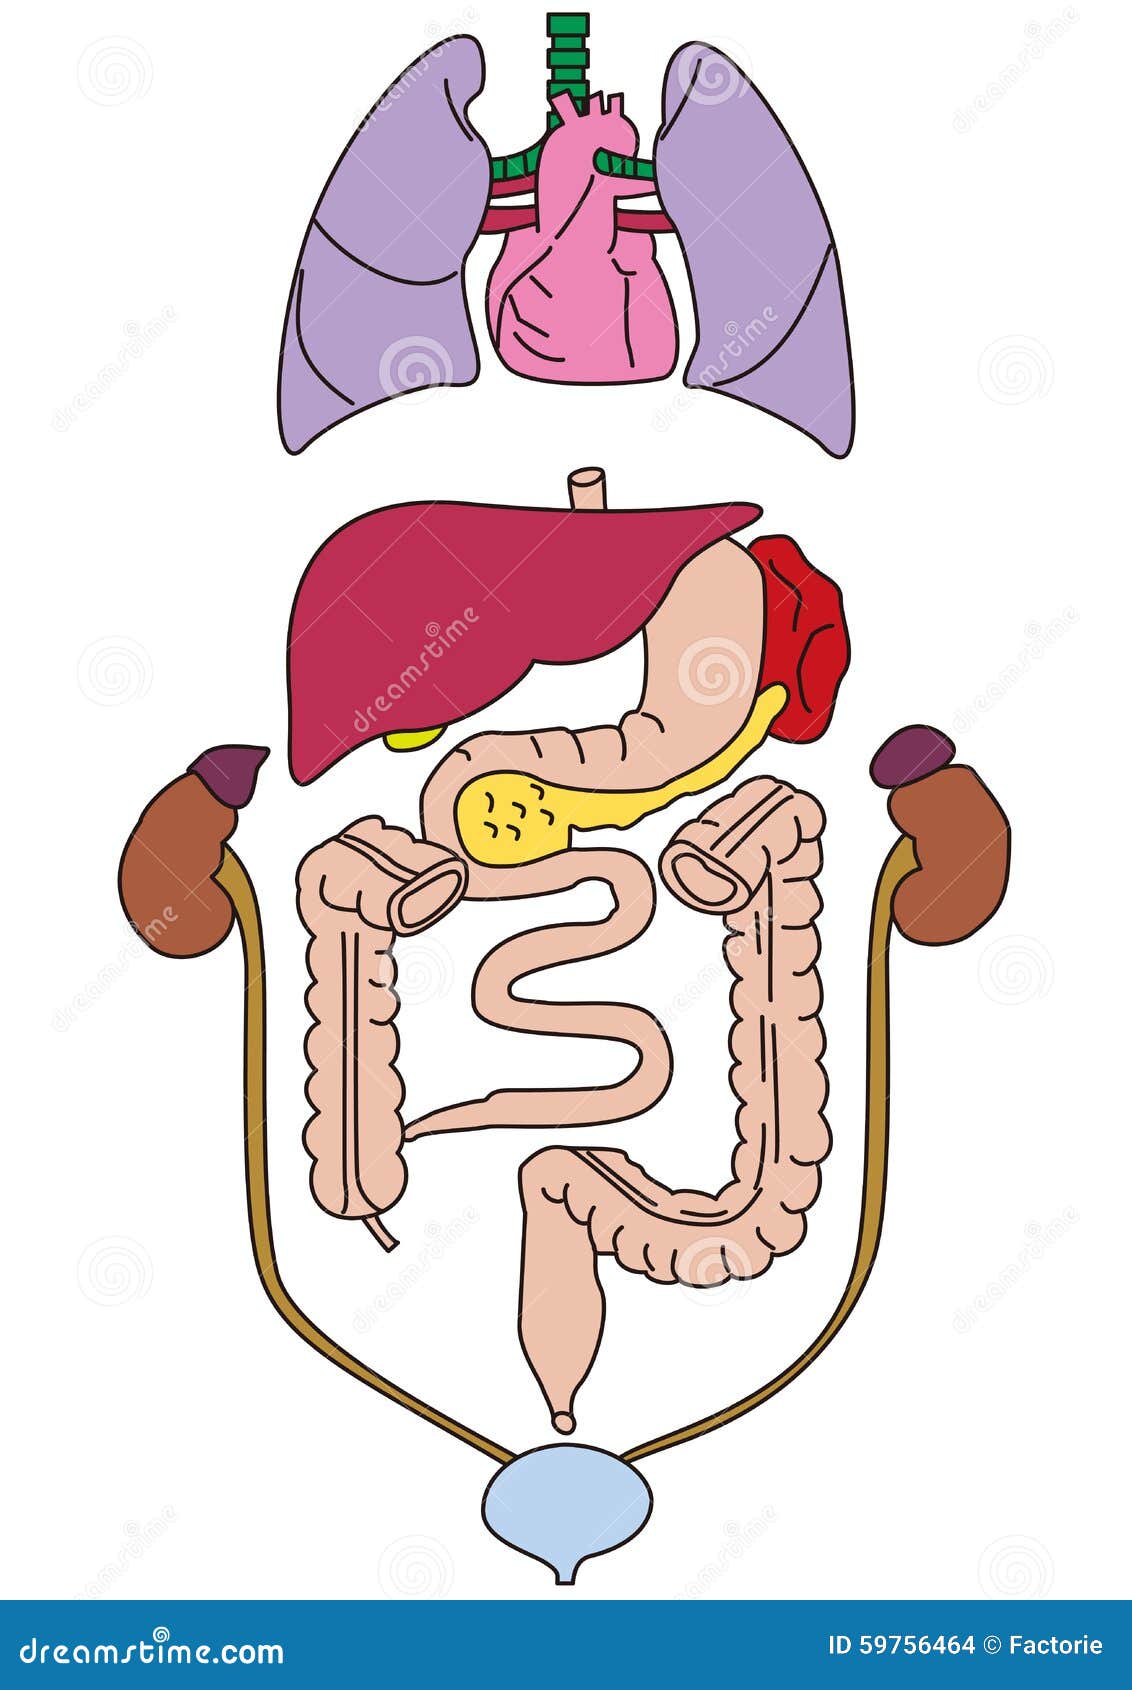 Los órganos Internos Del Cuerpo Humano Stock De Ilustración